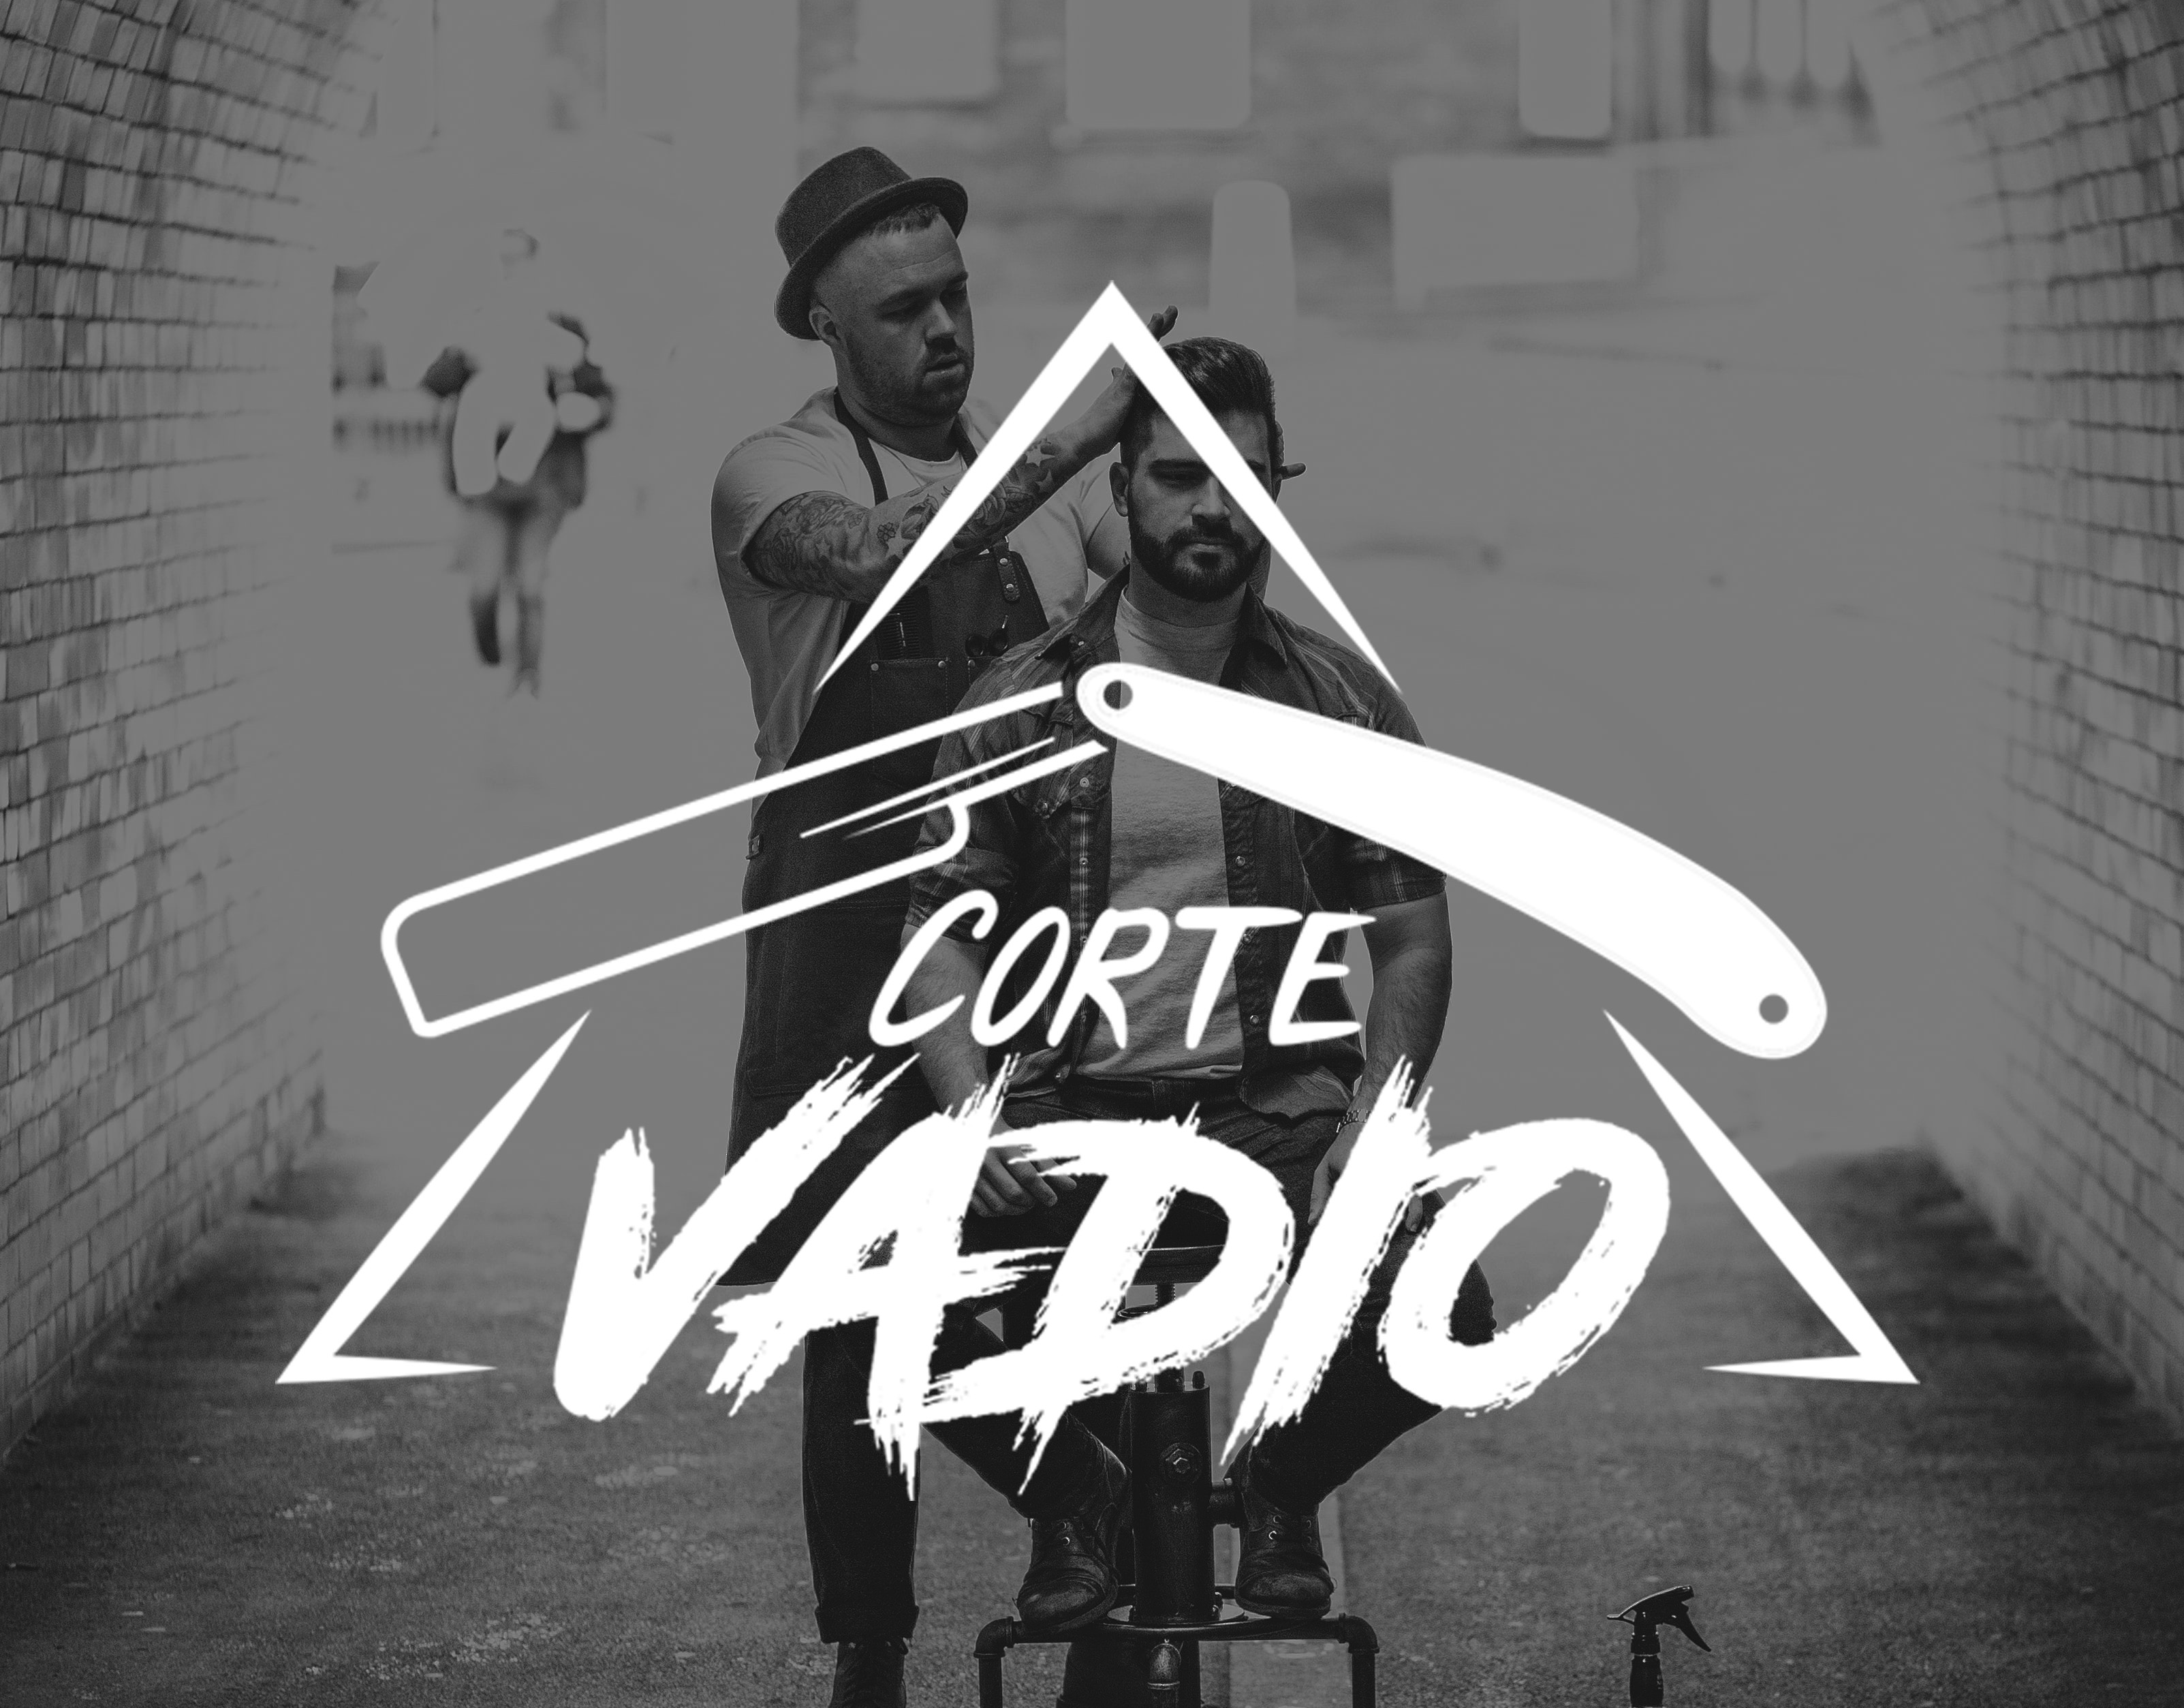 Branding - Corte Vadio